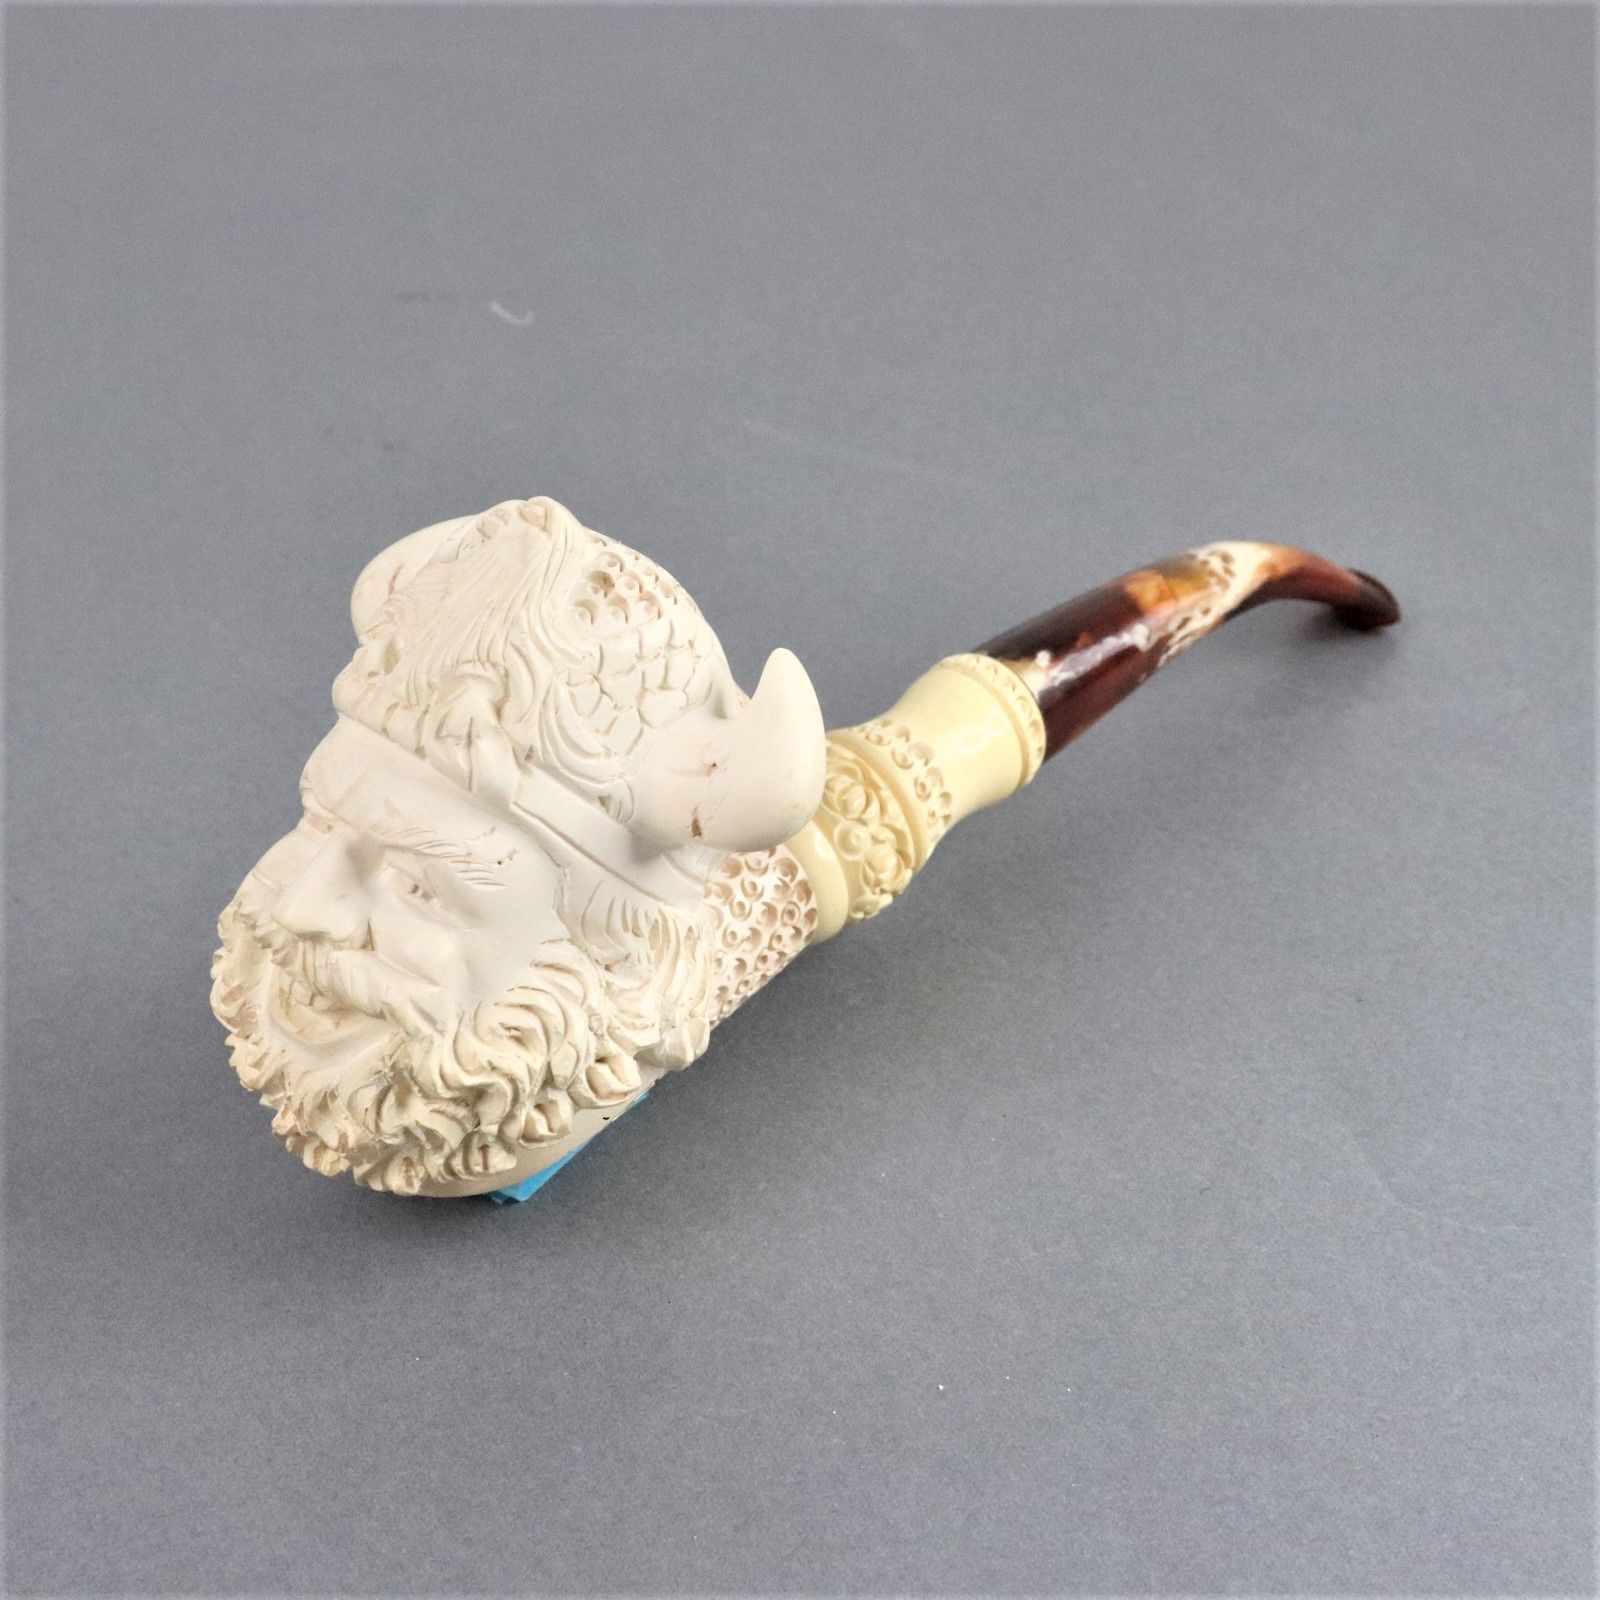 メシャムパイプ トルコ 喫煙具 キセル アンティーク 人面彫刻 海泡石